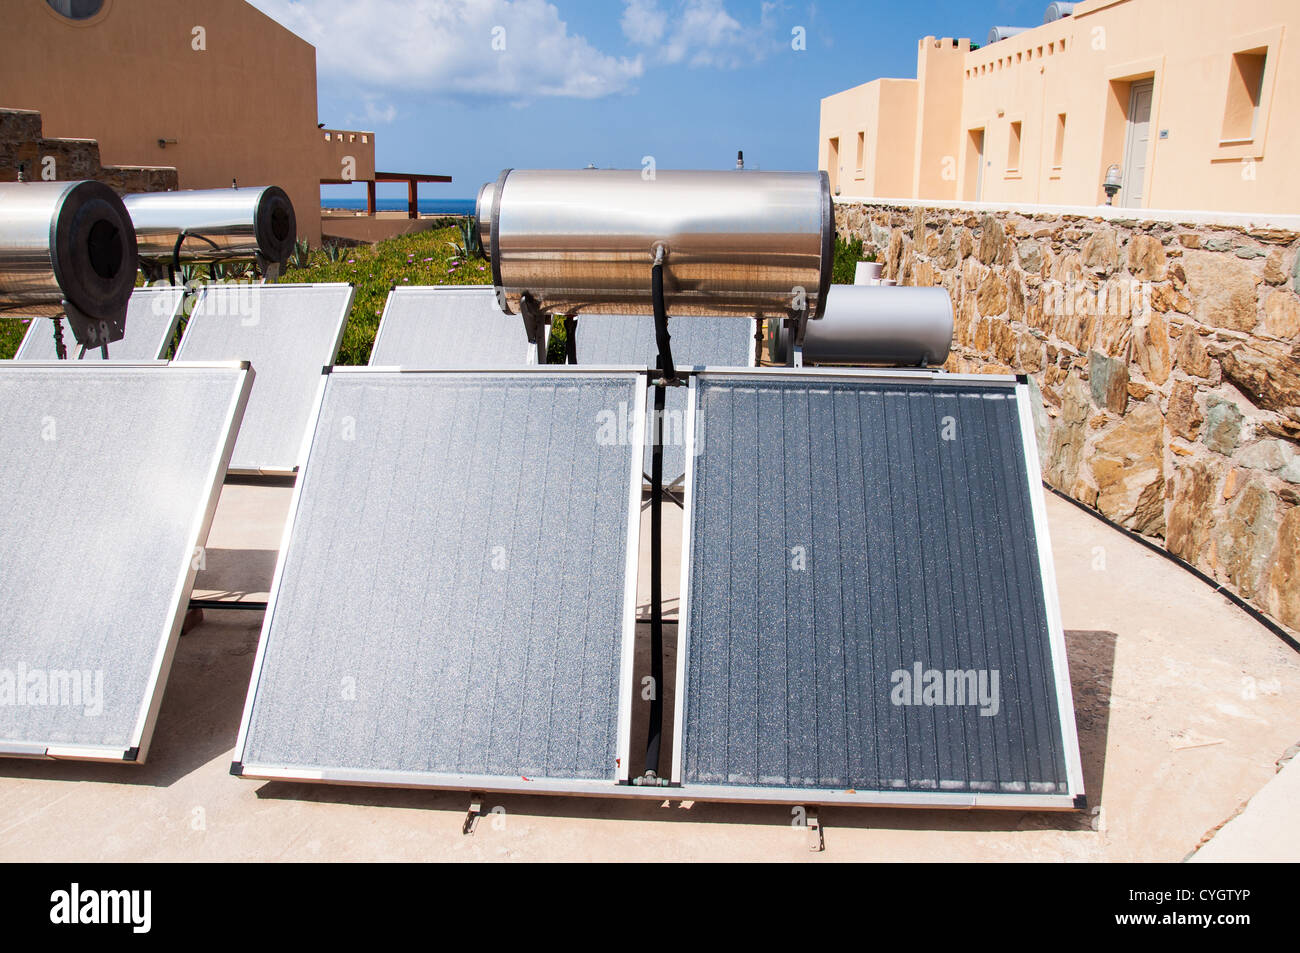 Chauffe-eau solaire sur le toit Banque D'Images